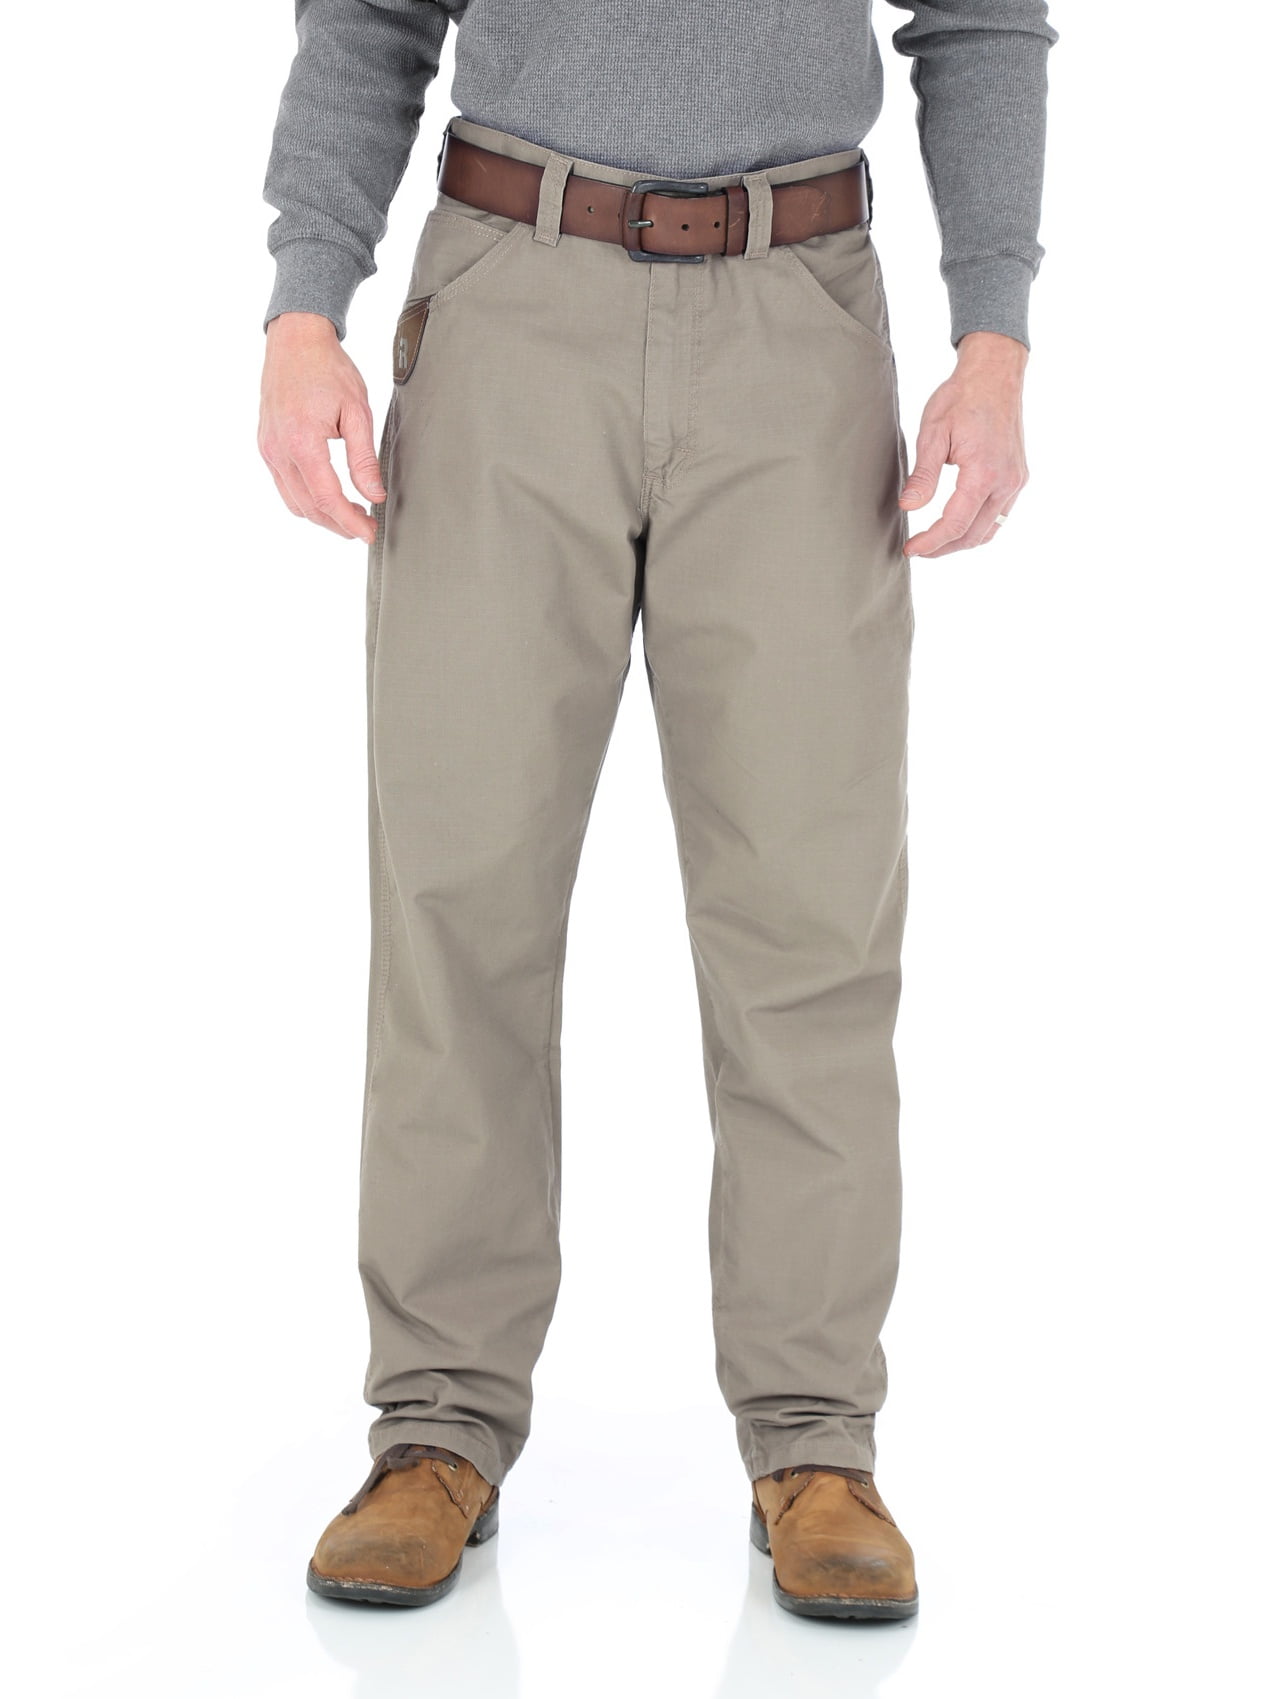 wrangler riggs workwear men's technician pants, loden, w33 l30 